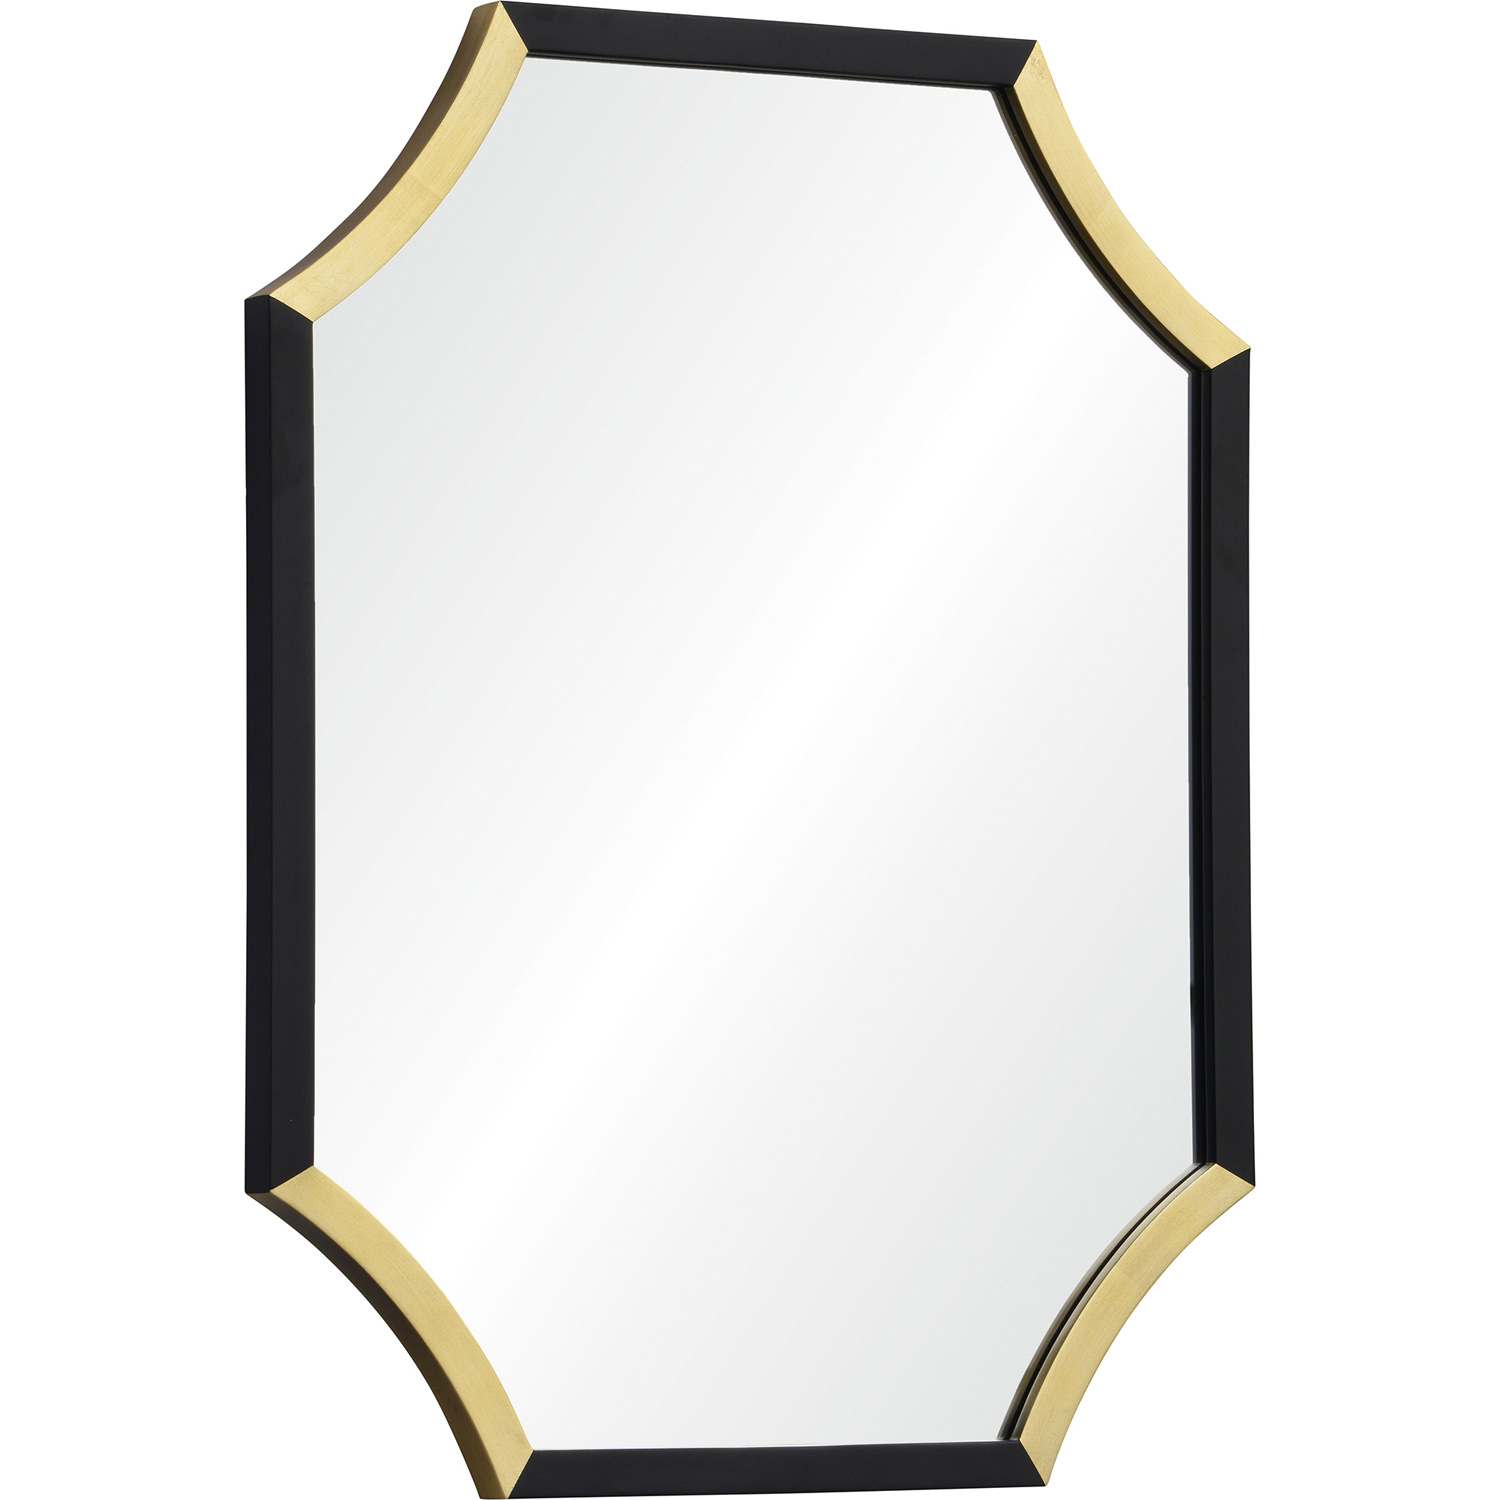 Ren-Wil Harlowe Octagon Mirror - Gold Leaf/Black